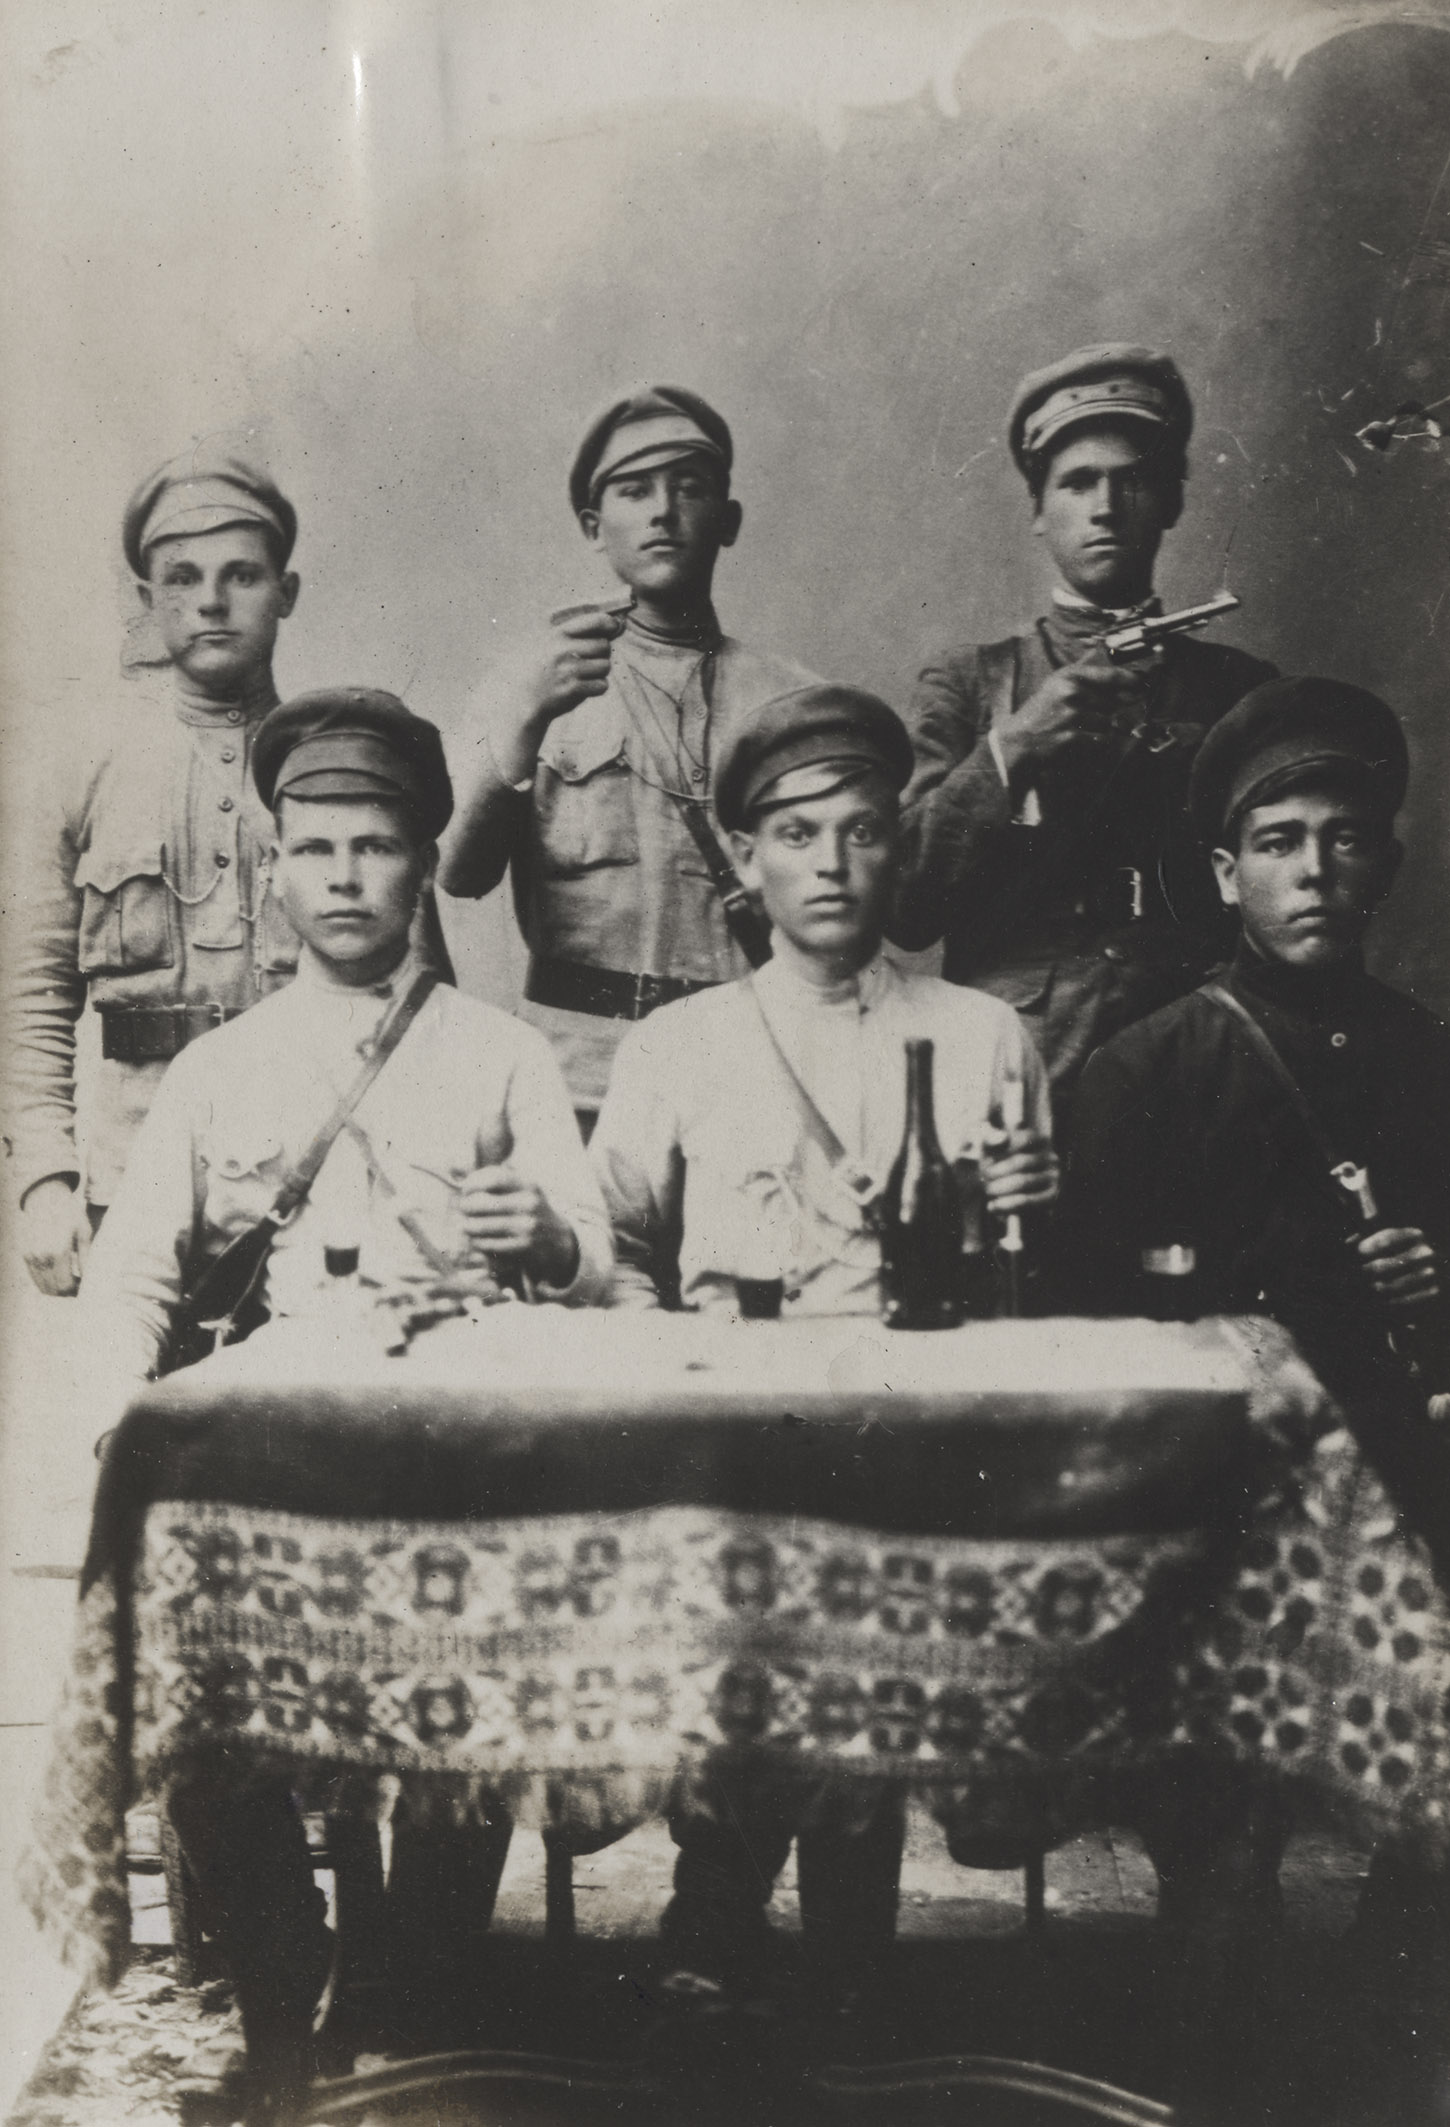 Czarno-biała fotografia sześciu młodych mężczyzn pozujących przy stole we wnętrzu studia. Trzech z nich siedzi za stołem, na wprost widza. Ubrani są w tradycyjne rosyjskie, wojskowe koszule z kołnierzem-stójką, przepasane paskiem i kieszeniami na piersiach. Na głowach mają ciemne czapki. Każdy wspiera rękę na rękojeściach szabli. Za ich plecami stoi trzech pozostałych mężczyzn. Dwóch z nich: drugi i trzeci od lewej w zgiętych, prawych rękach trzymają pistolety, które skierowane są nad głowami siedzących w prawą stronę kadru. Stół, który znajduje się na pierwszym planie jest nakryty grubym, wzorzystym materiałem, a na nim stoi ciemna butelka z długą szyjką oraz trzy szklanki napełnione ciemnym płynem, prawdopodobnie winem.

